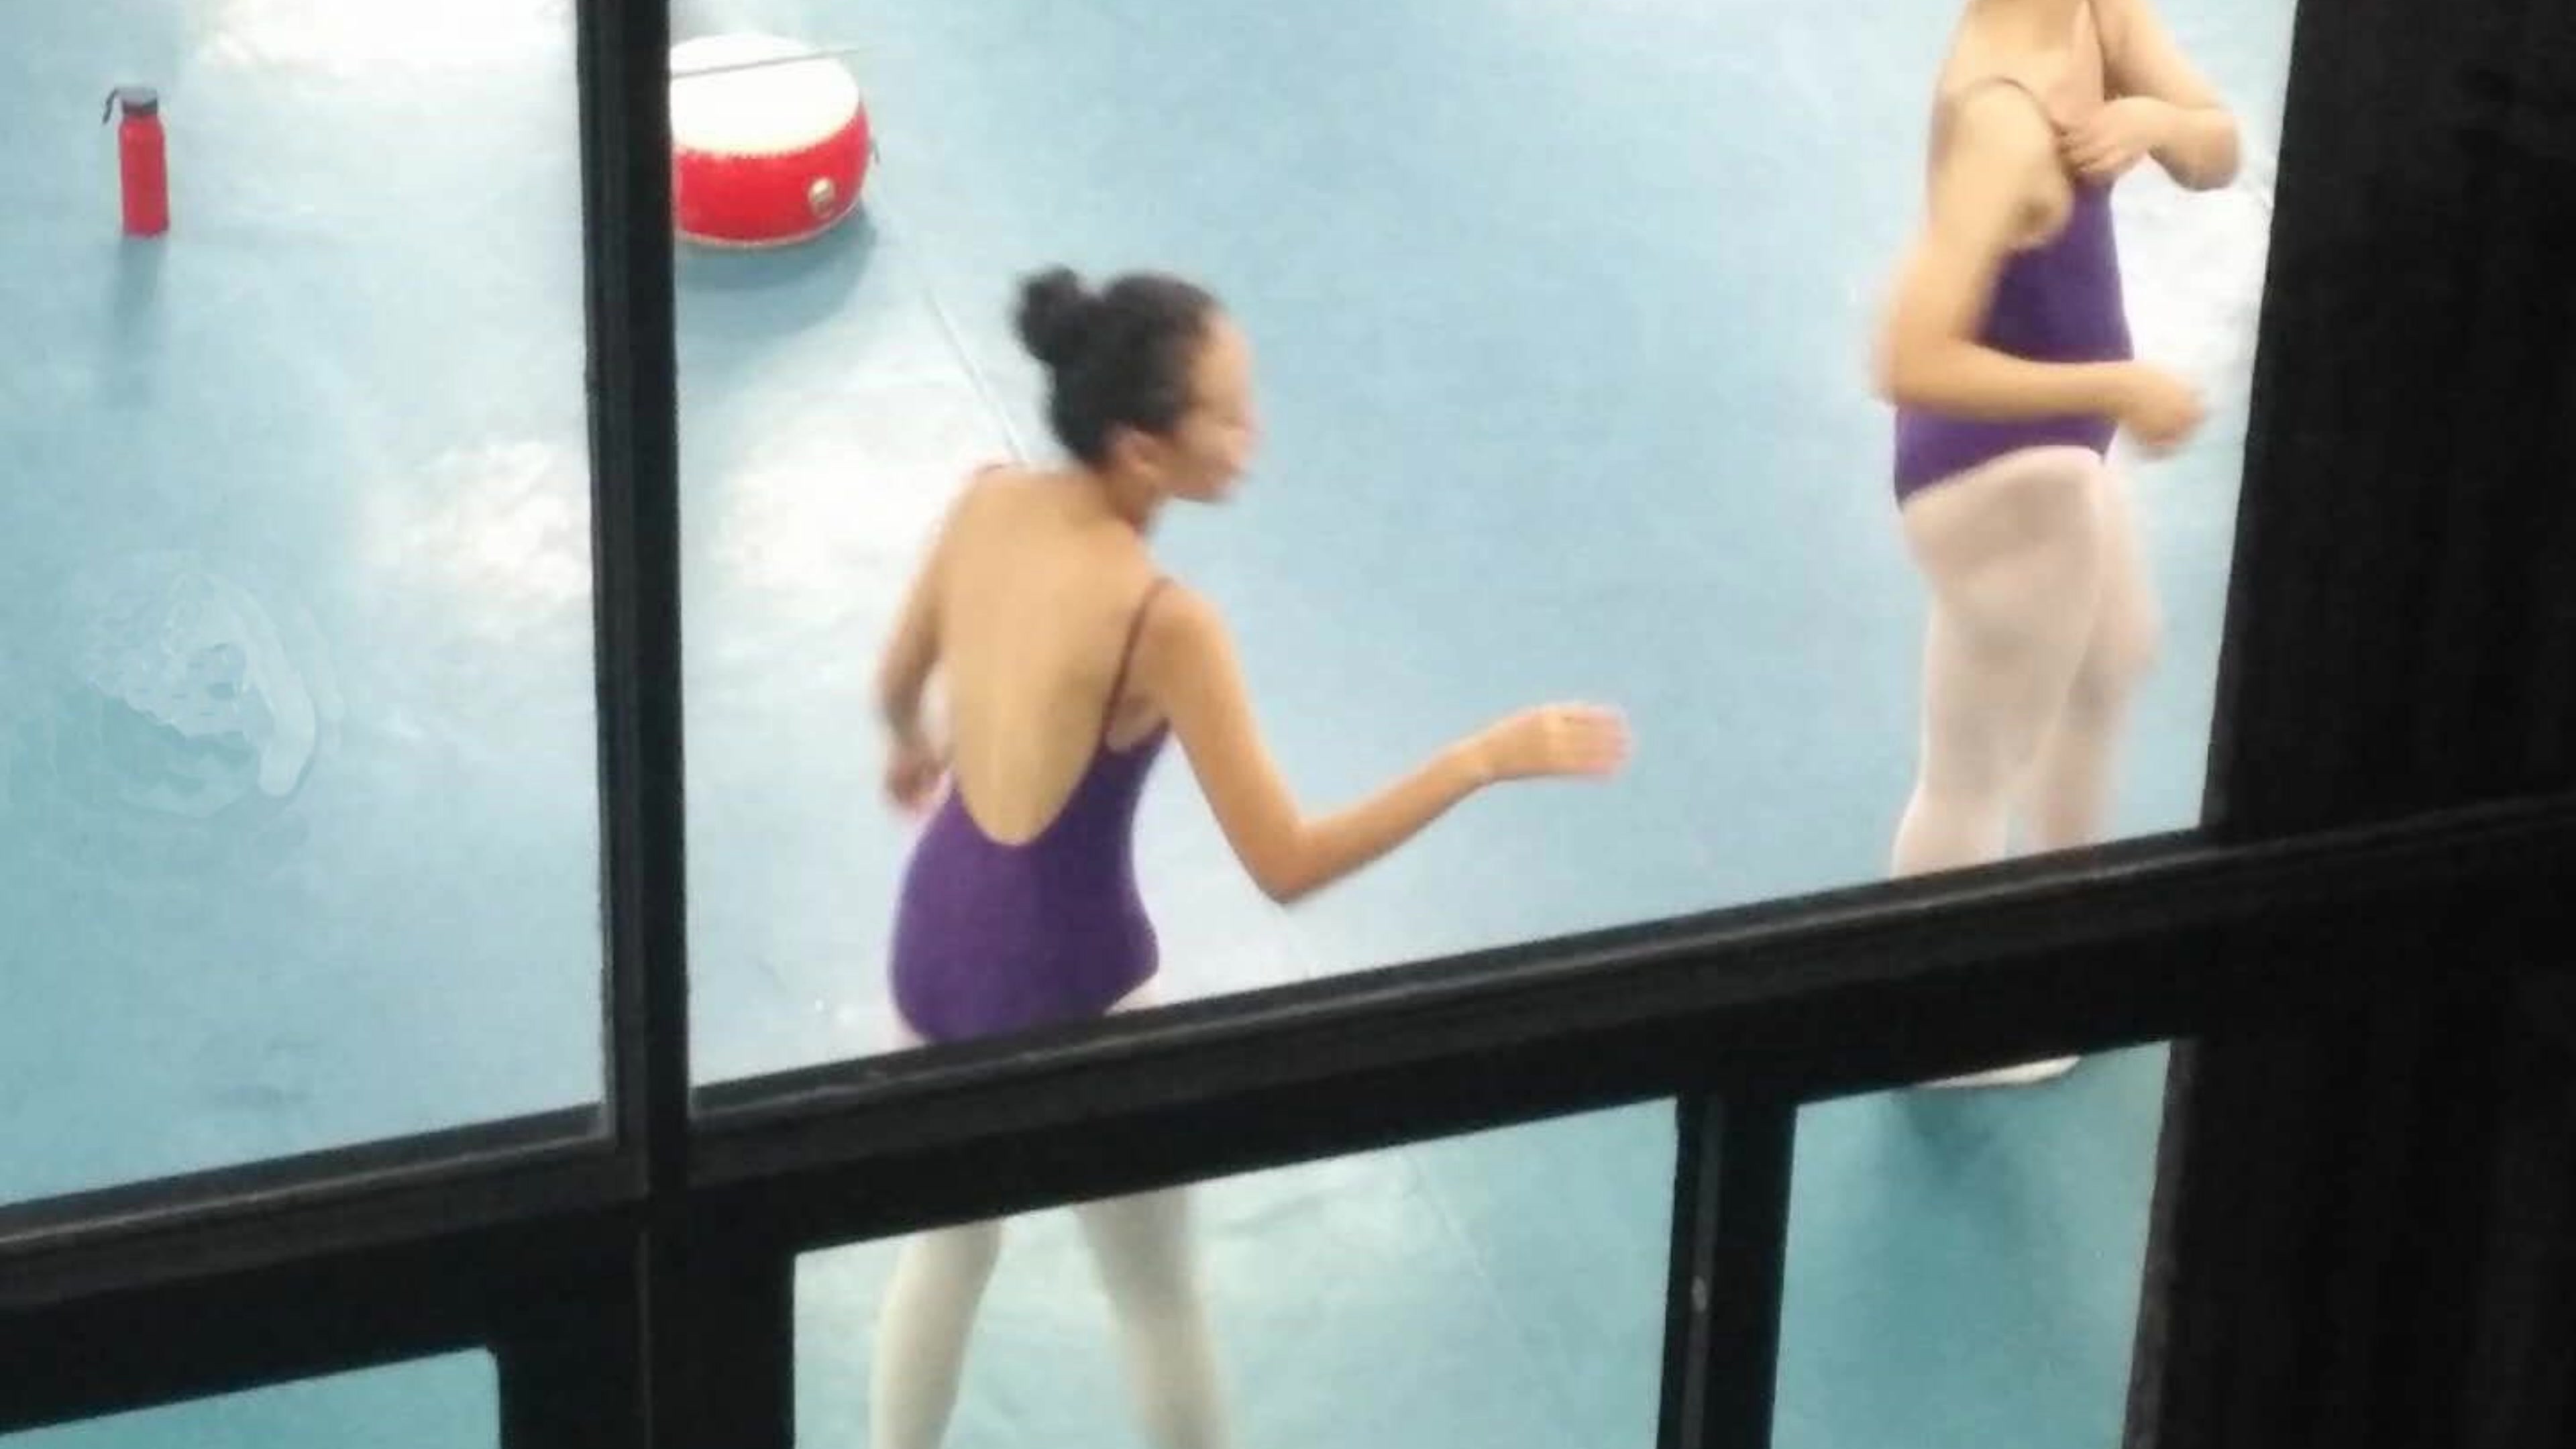 舞蹈训练室窗外看见漂亮妹子穿性感连体舞蹈服练舞蹈就不受控制的想窥视她们的嫩B